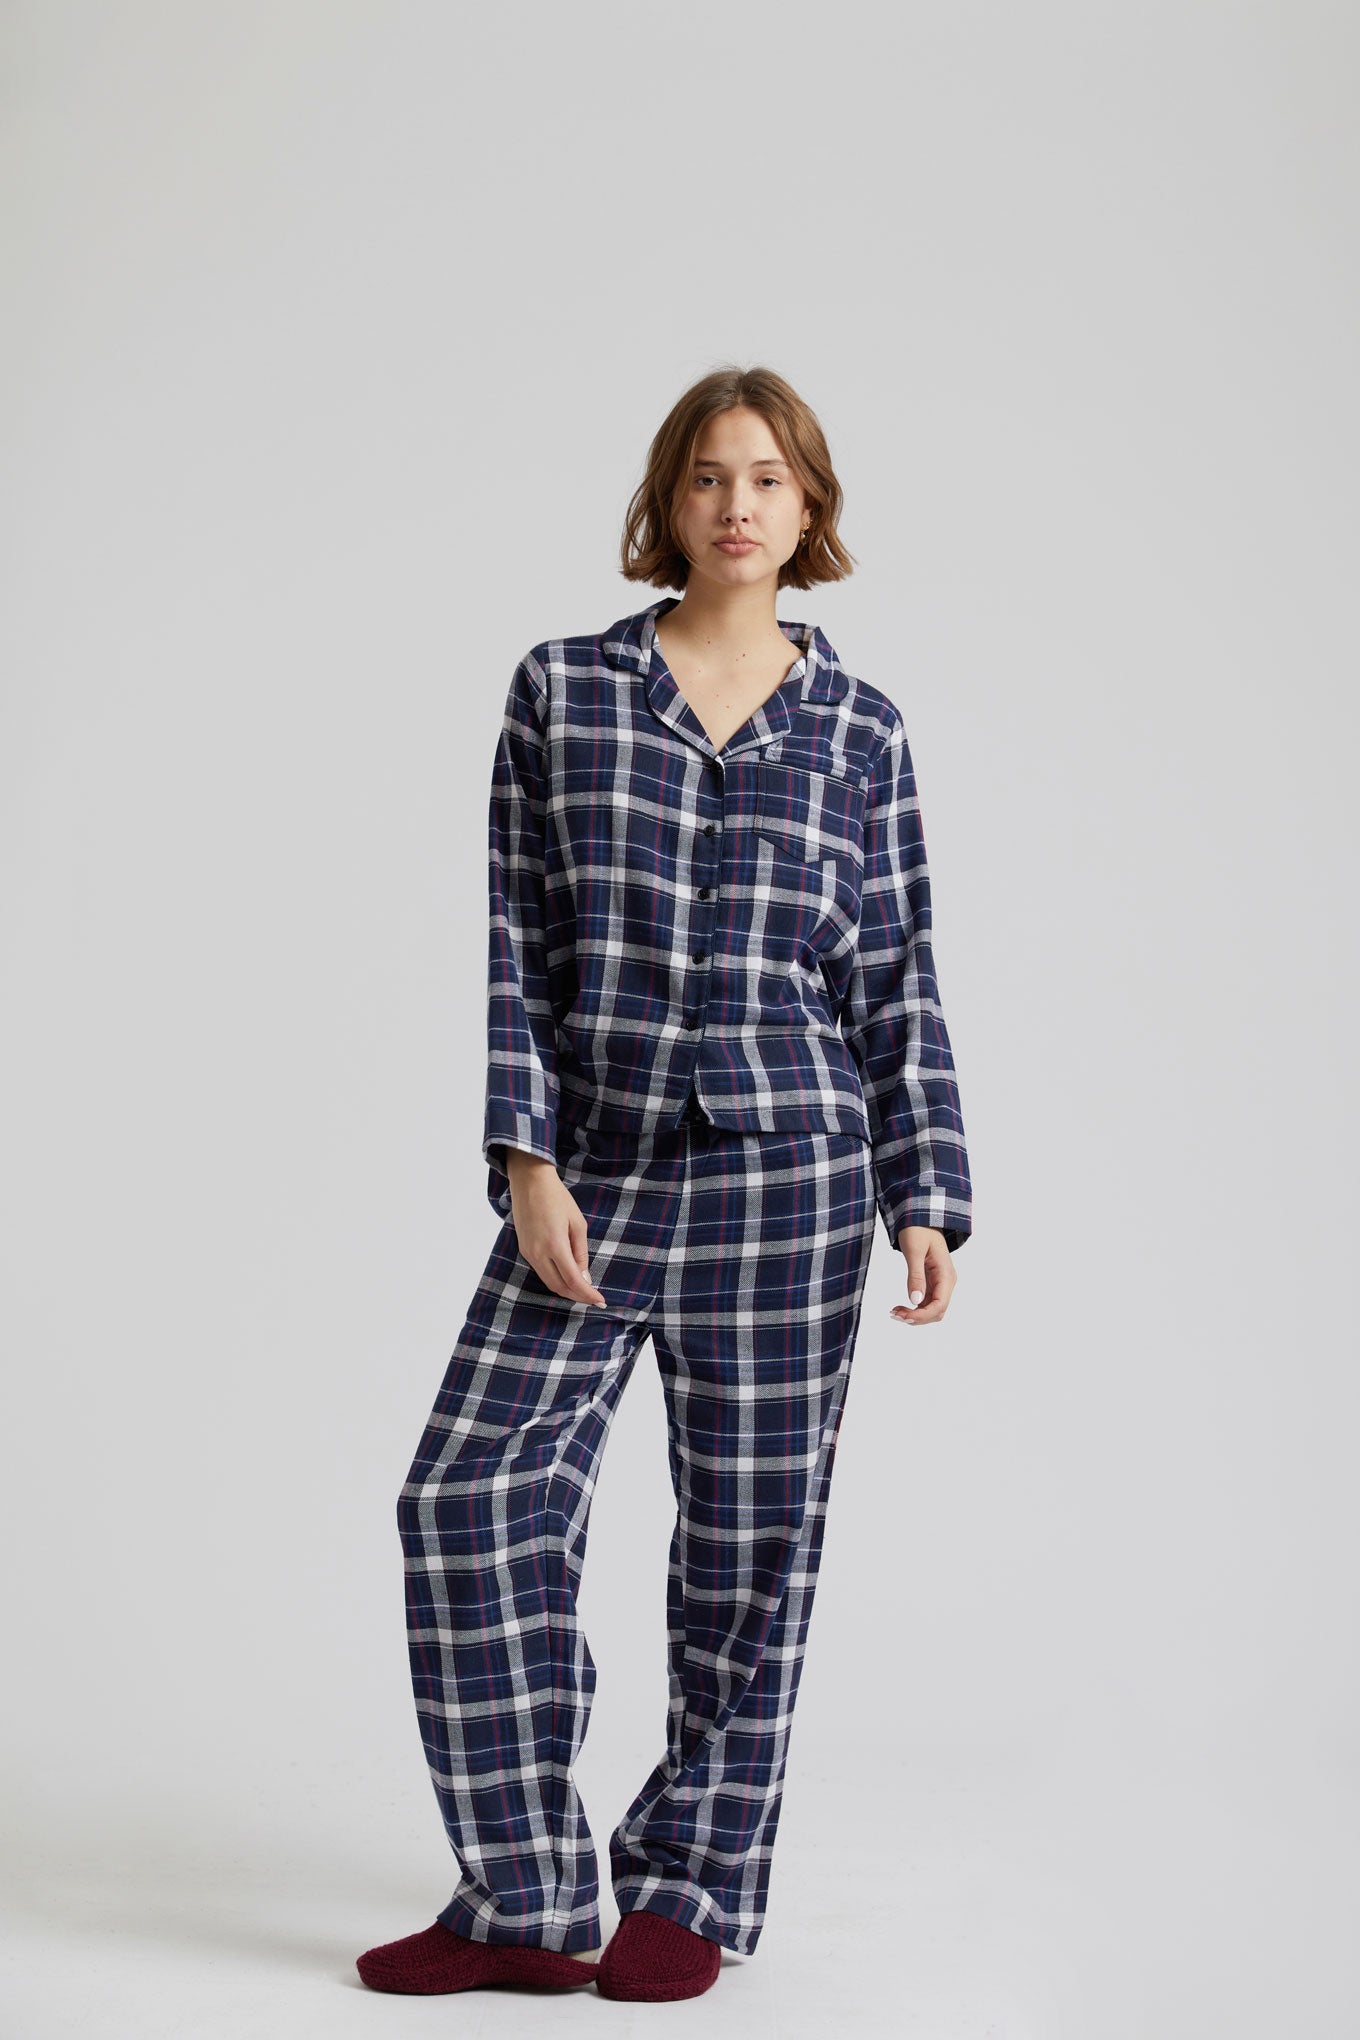 Dark blue JIM JAM pajamas made from 100% organic cotton from Komodo